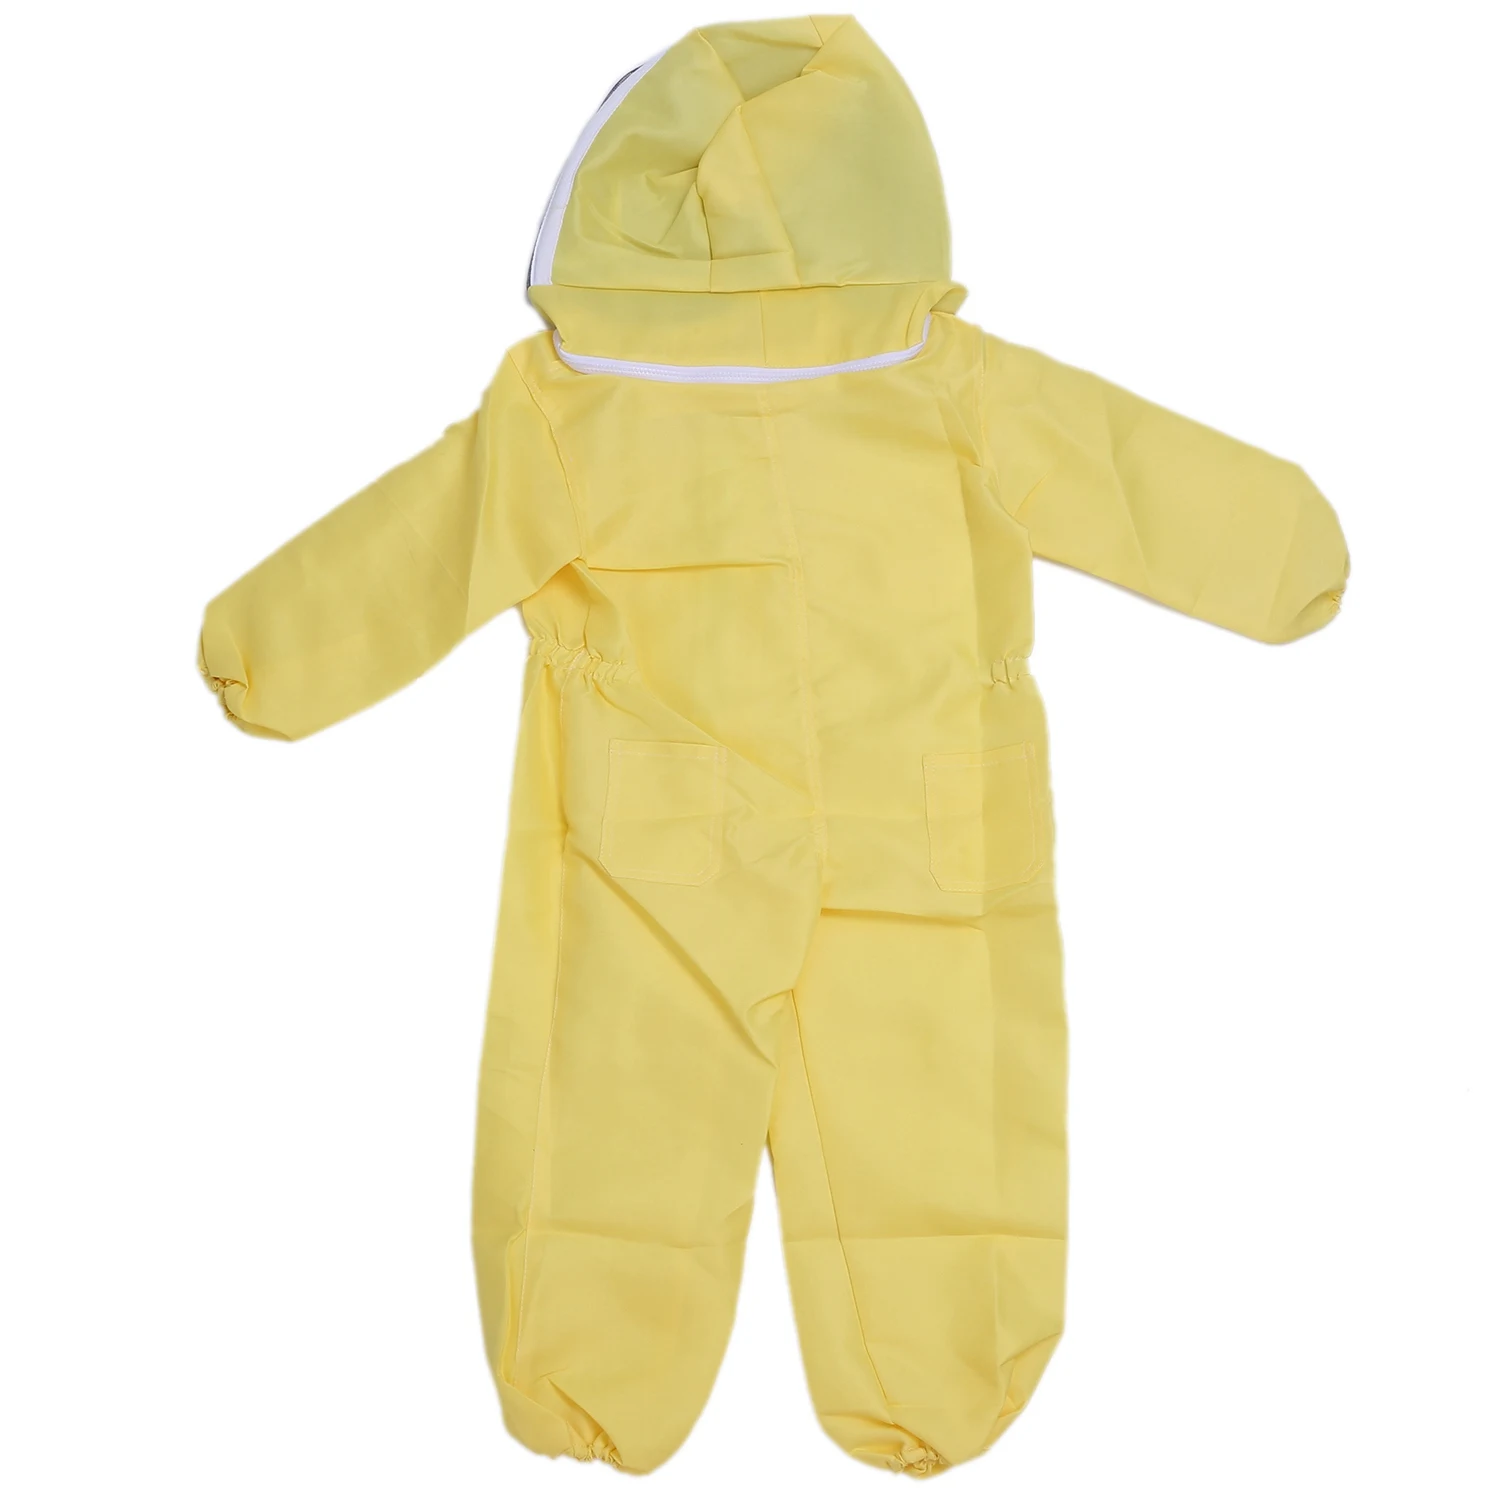 

Профессиональный Детский защитный костюм для пчеловодства, пчеловодческий костюм, оборудование для пчеловодства, костюм для посетителей фермы, M